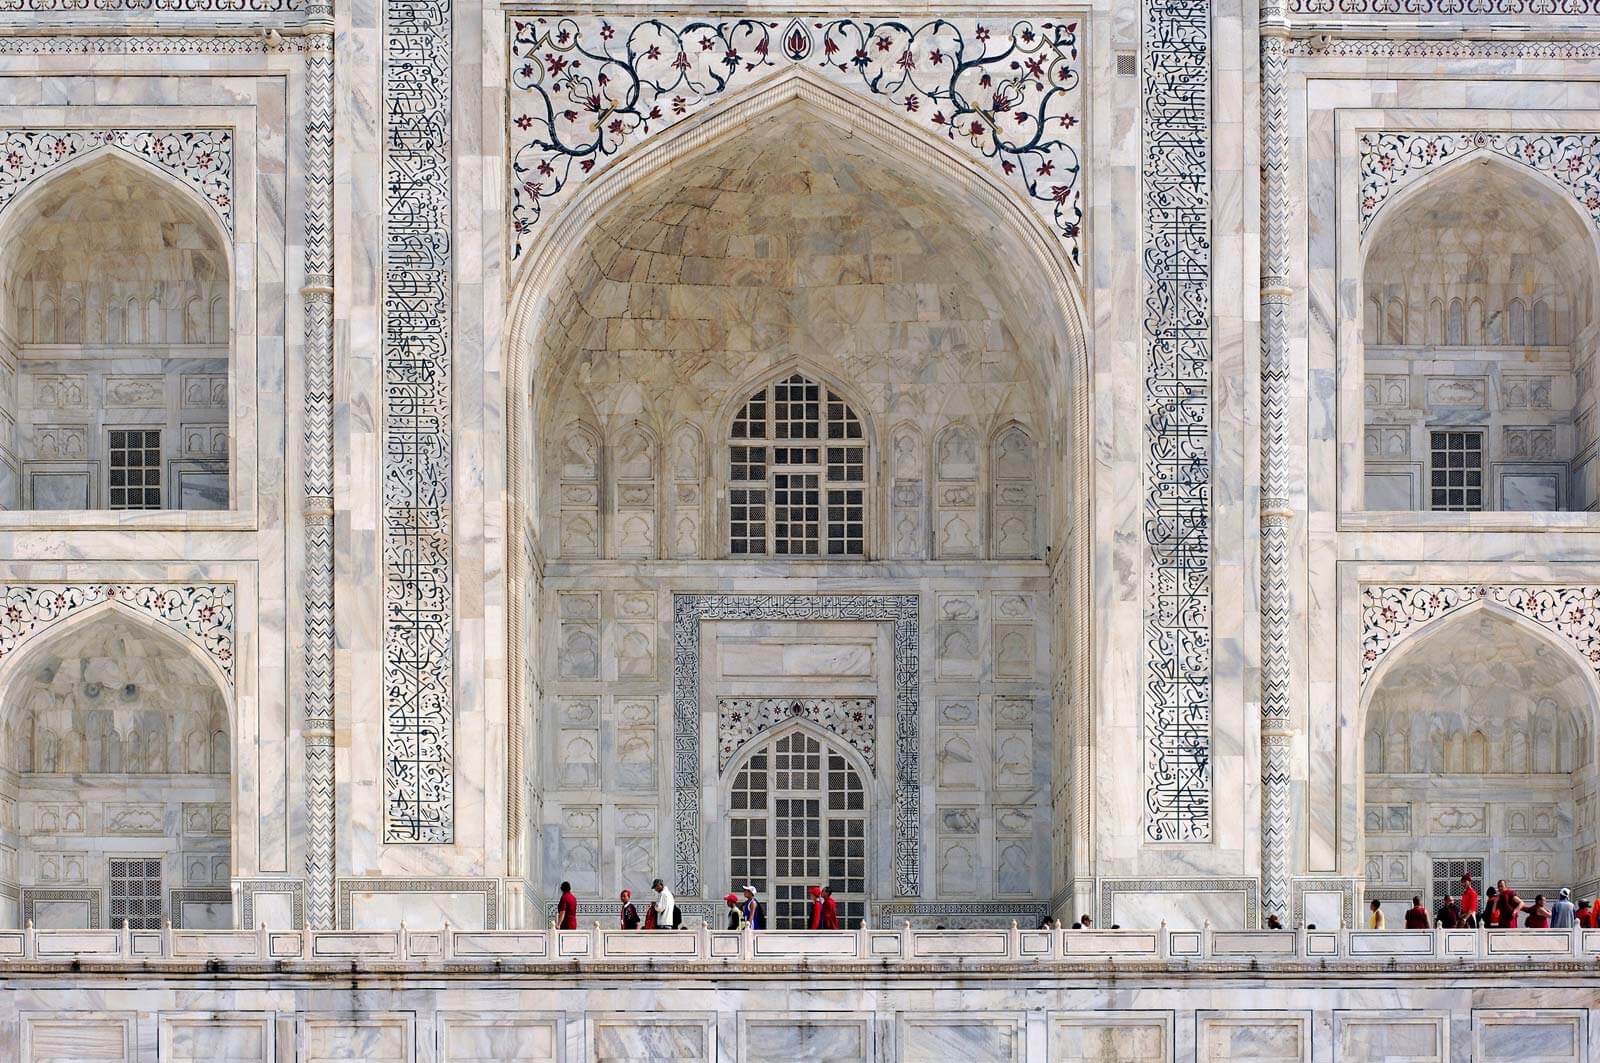  Design of Taj Mahal